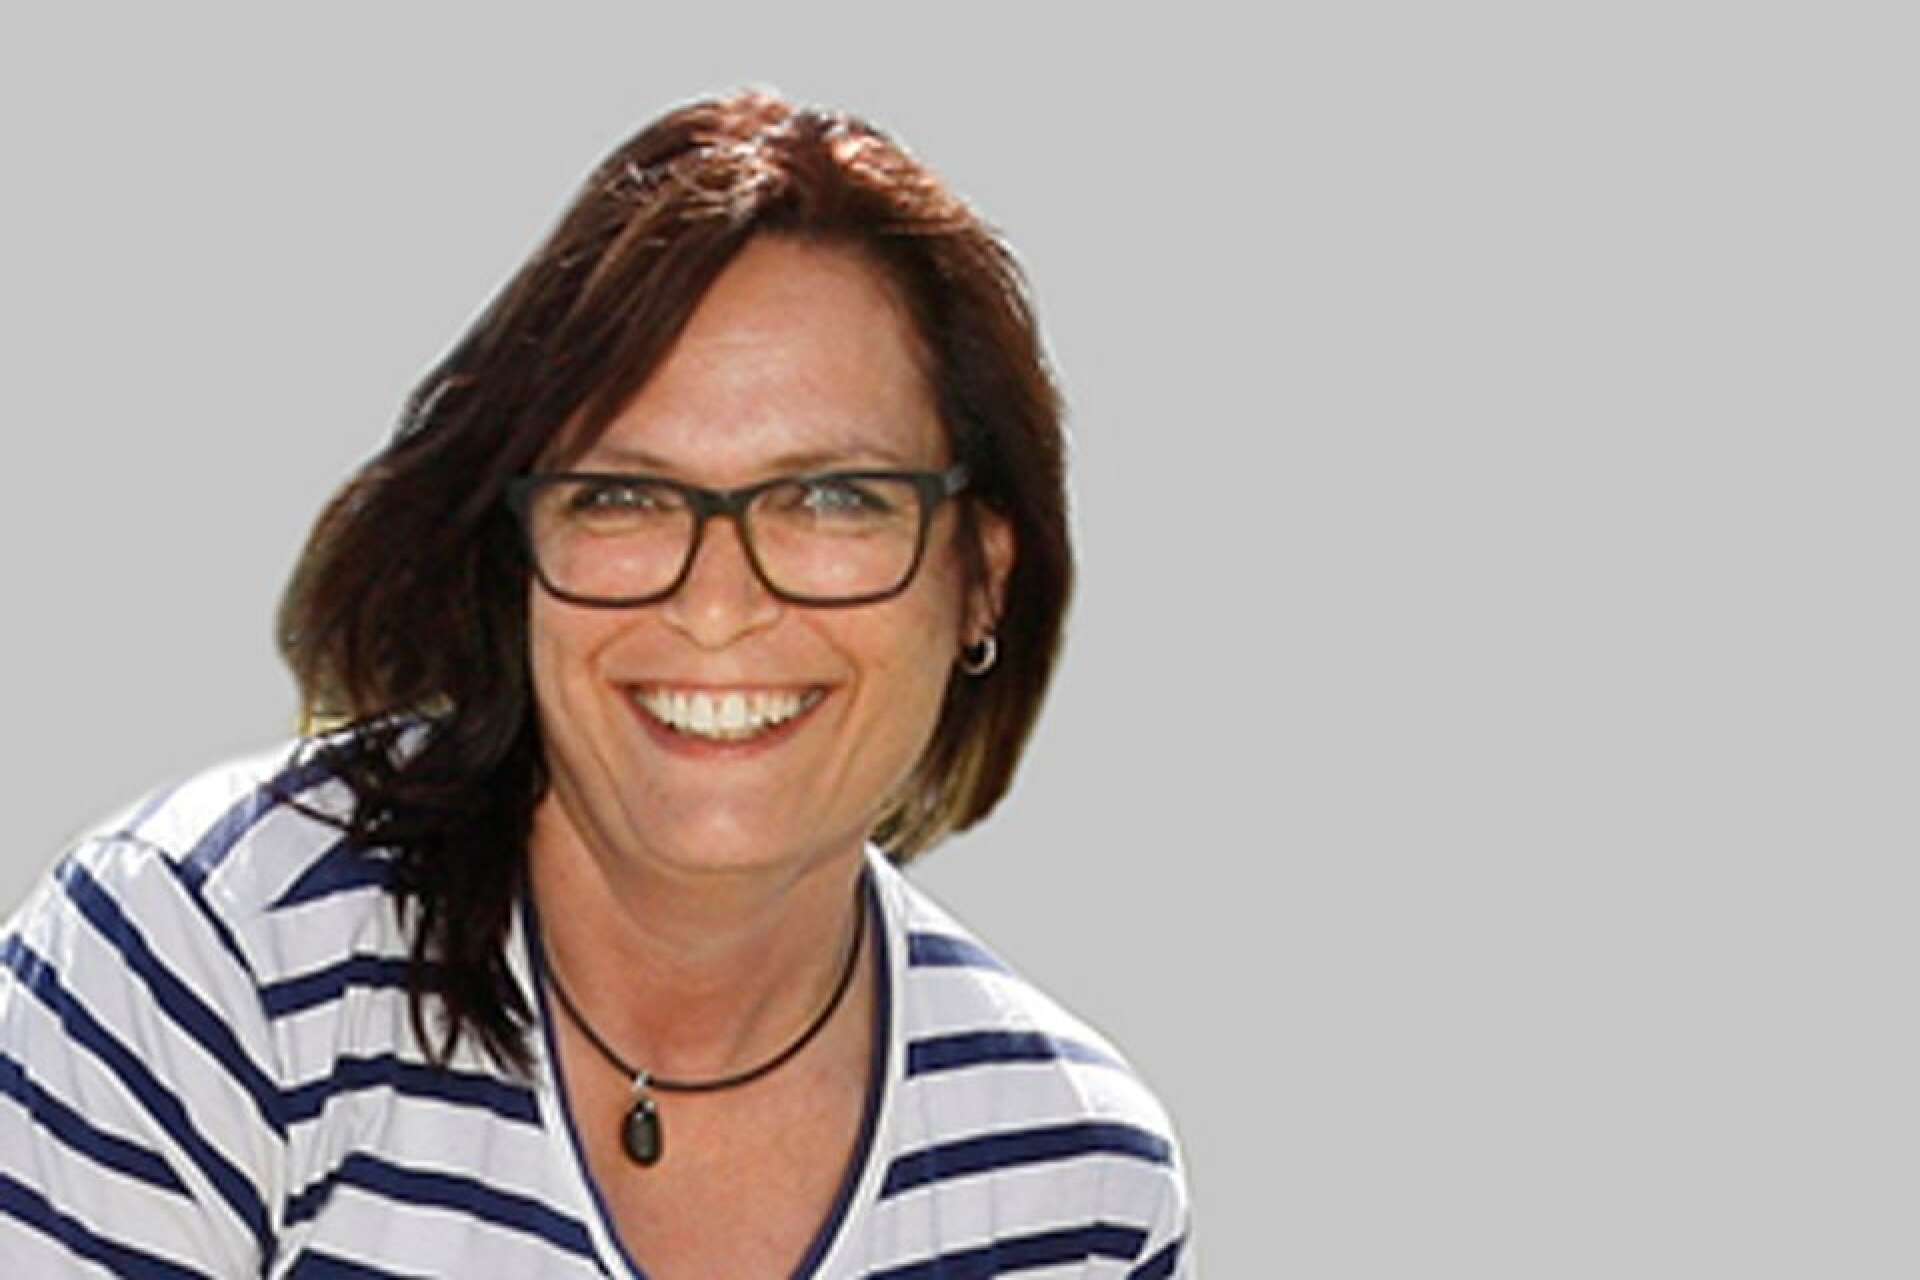 Helen van Dijk är ordförande i ACCS Lidköping. Hon blir glad av ”Värmlandsraggare” - men önskar att de kunde städa upp efter sig.